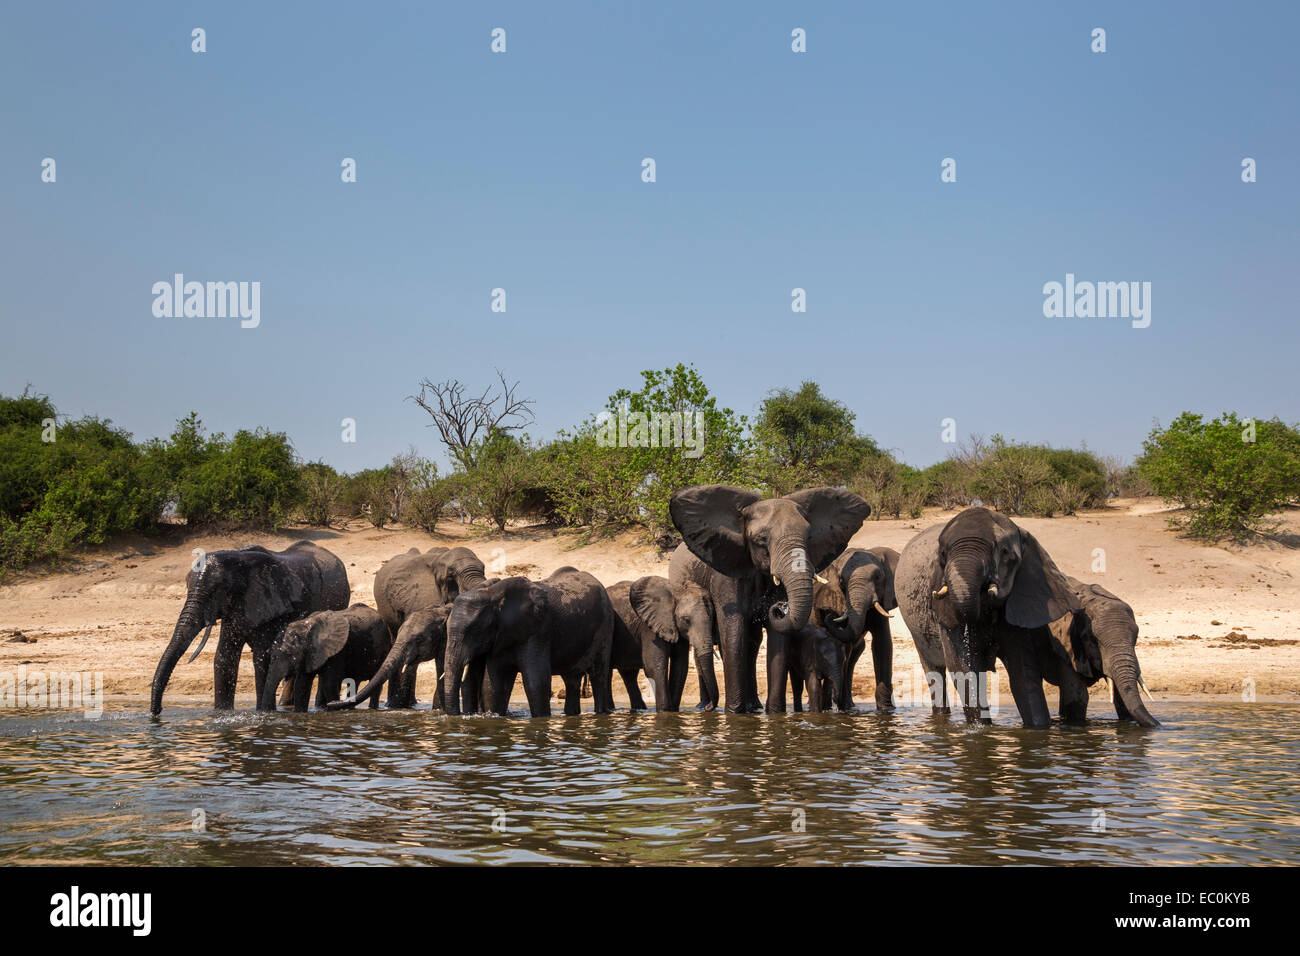 African elephants (Loxodonta africana) drinking in Chobe River, Chobe National Park, Botswana Stock Photo